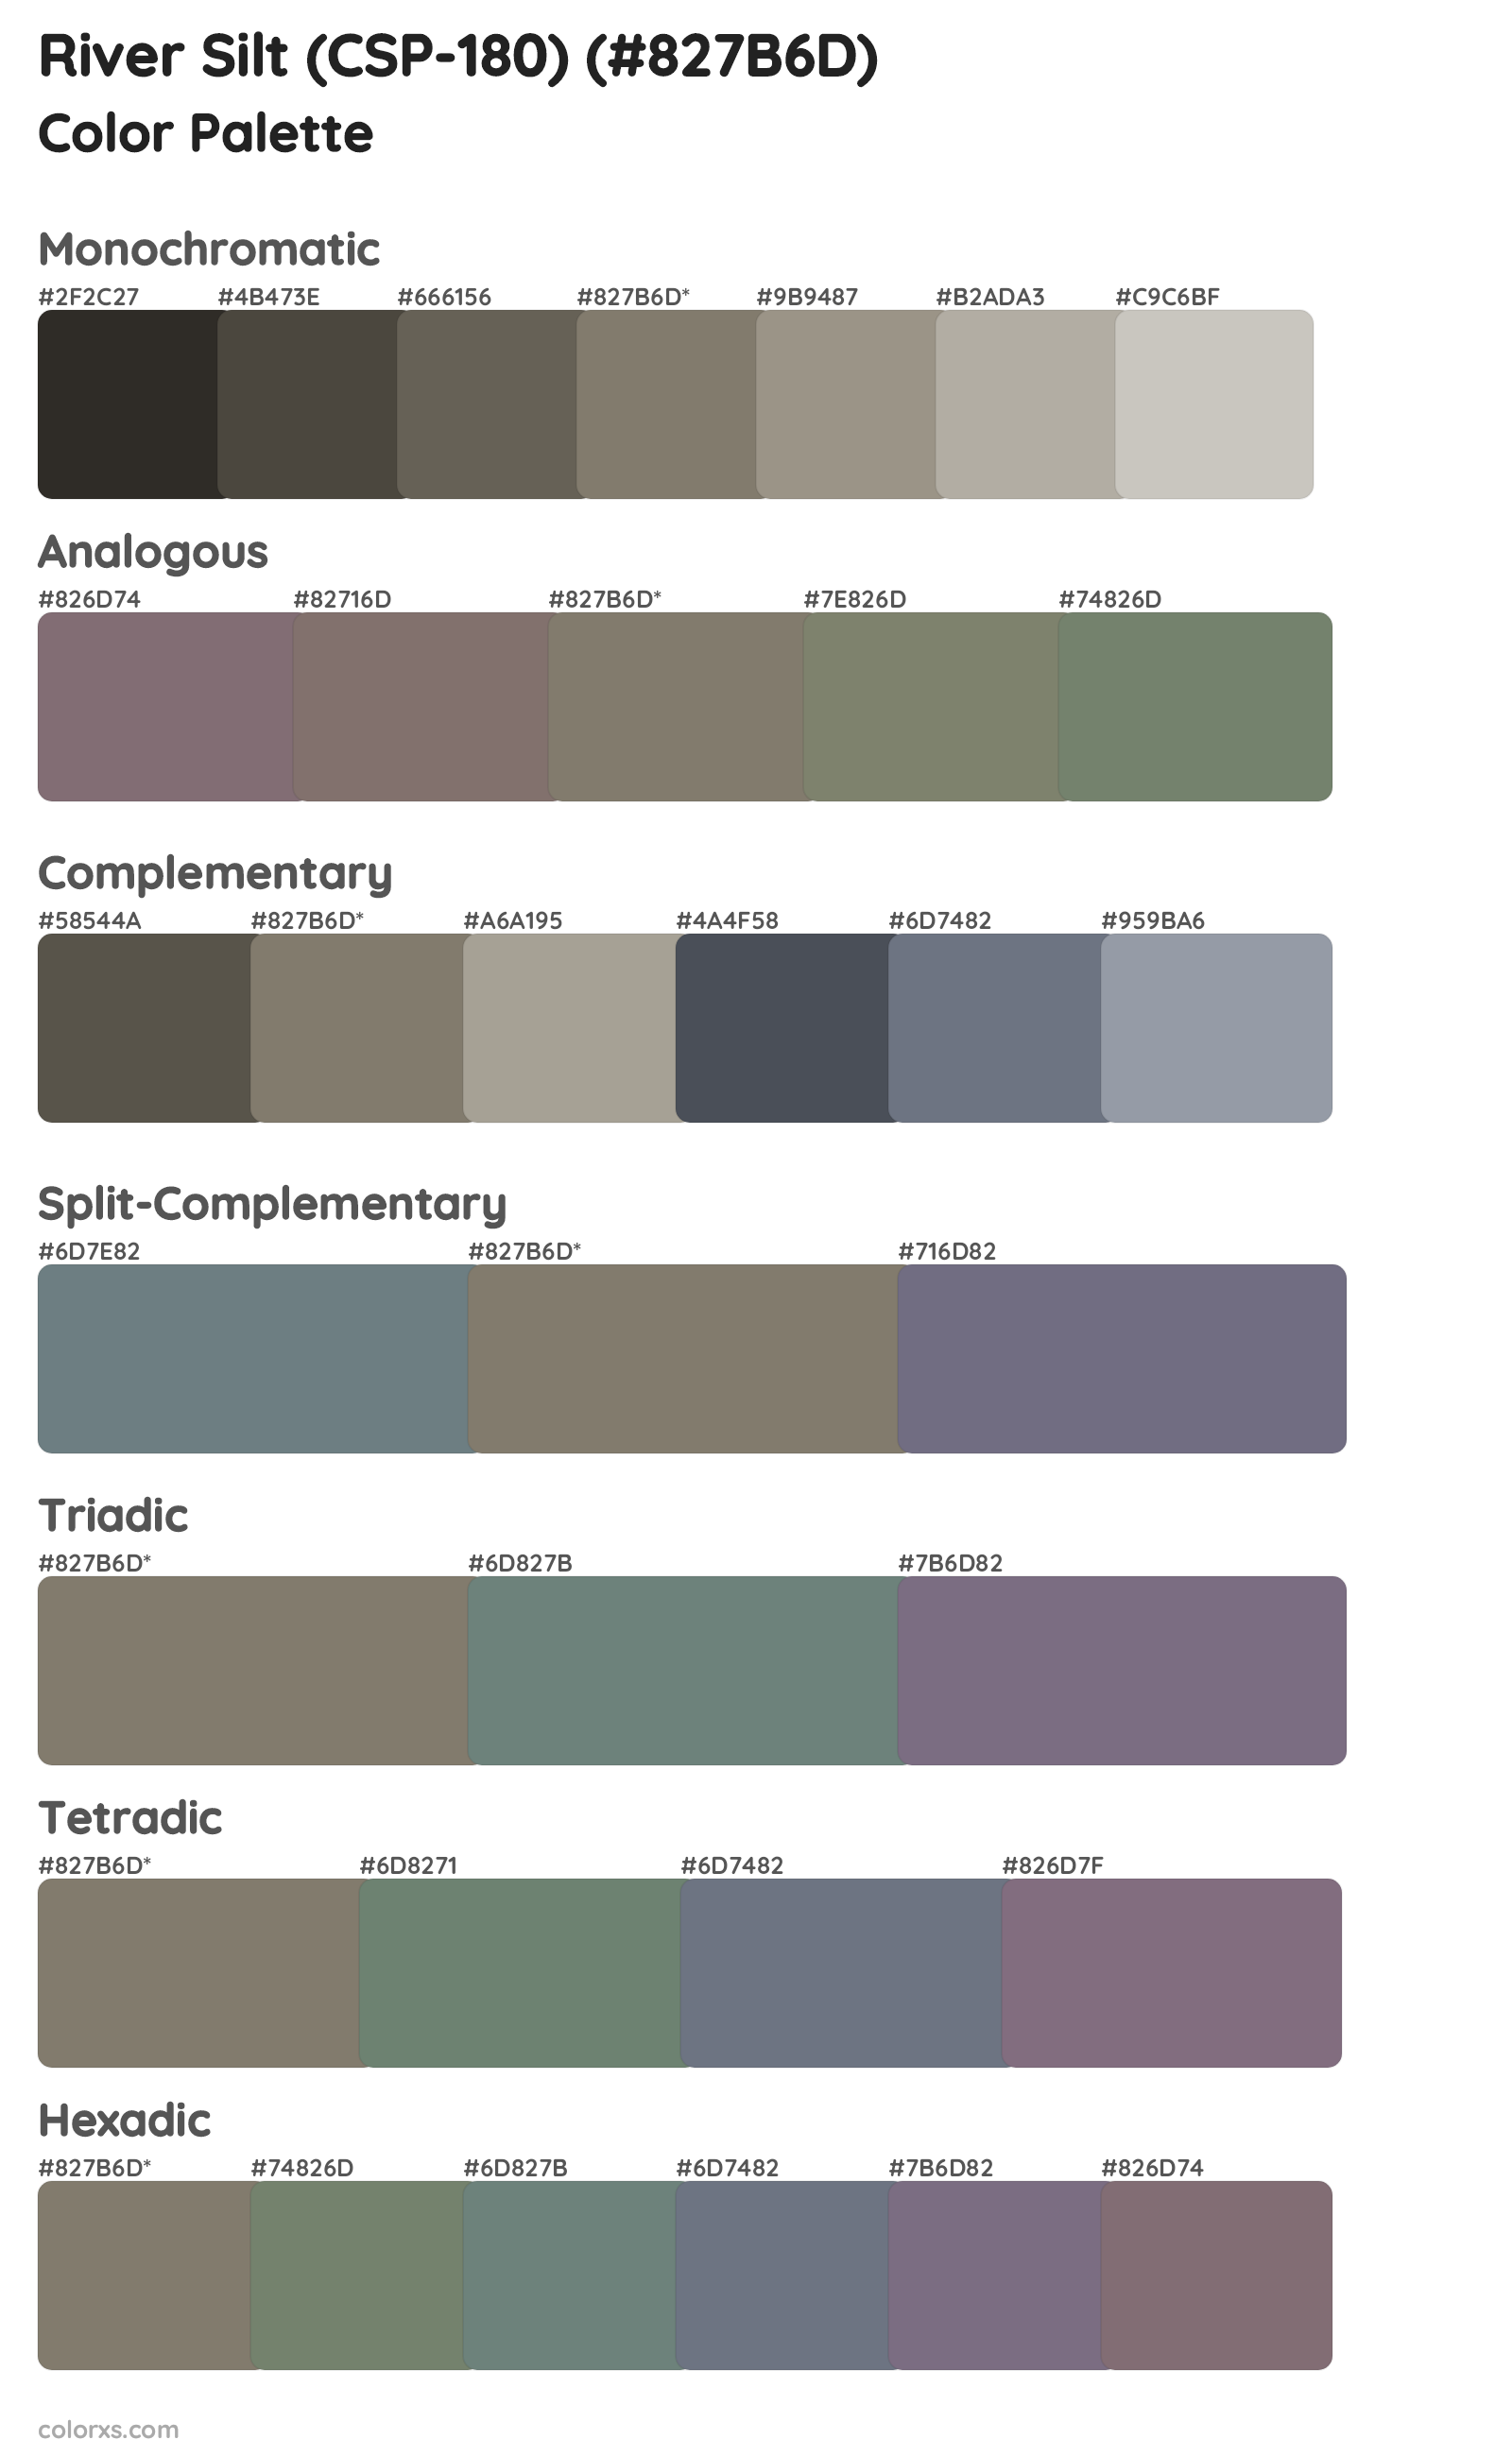 River Silt (CSP-180) Color Scheme Palettes